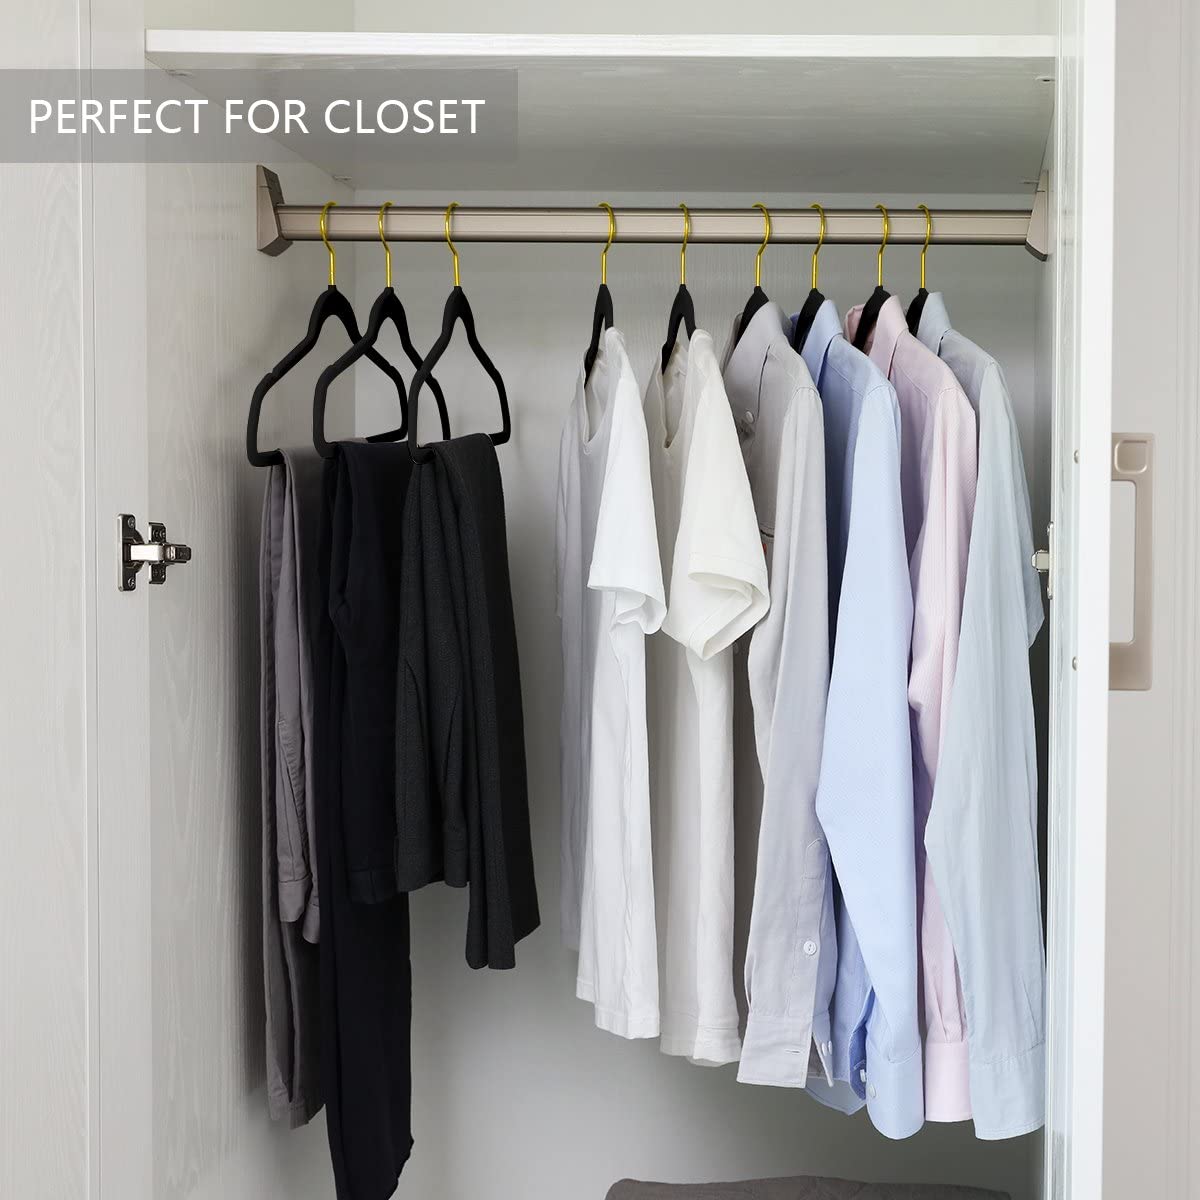 MIZGI Premium Velvet Hangers (50 Pack) Heavy Duty - Non Slip Felt Suit  Hangers Teal/Turquoise - Rose Gold Hooks,Space Saving Clothes Hangers